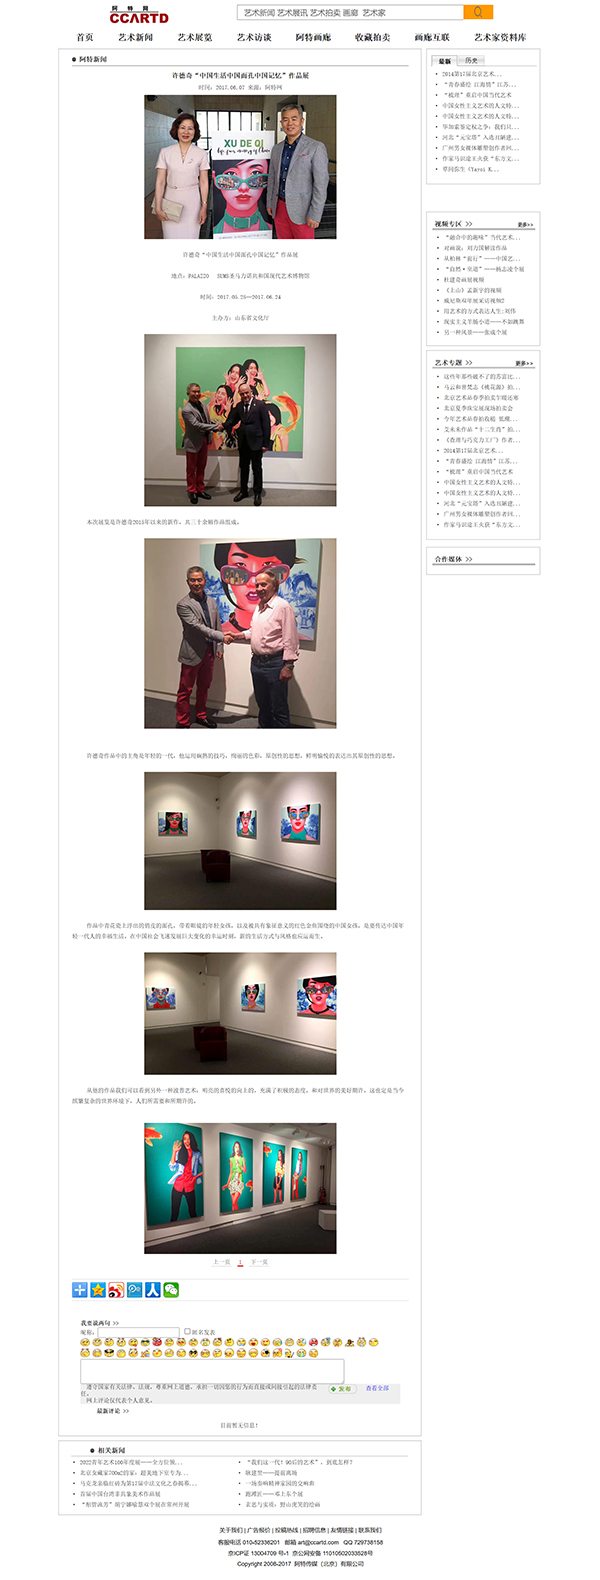 许德奇“中国生活中国面孔中国记忆”作品展